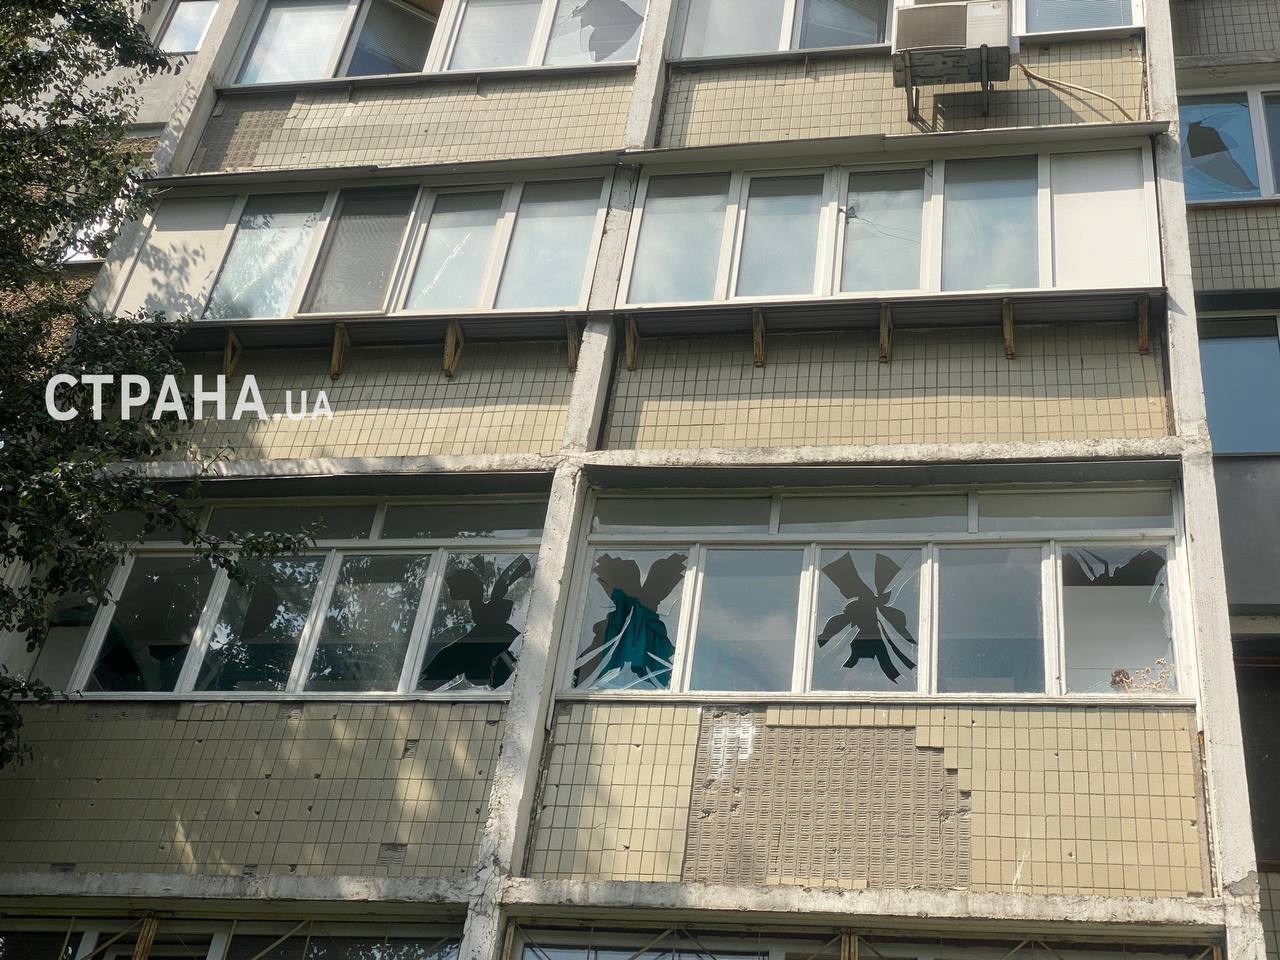 Дом в Шевченковском районе Киева, пострадавший в результате ночной атаки